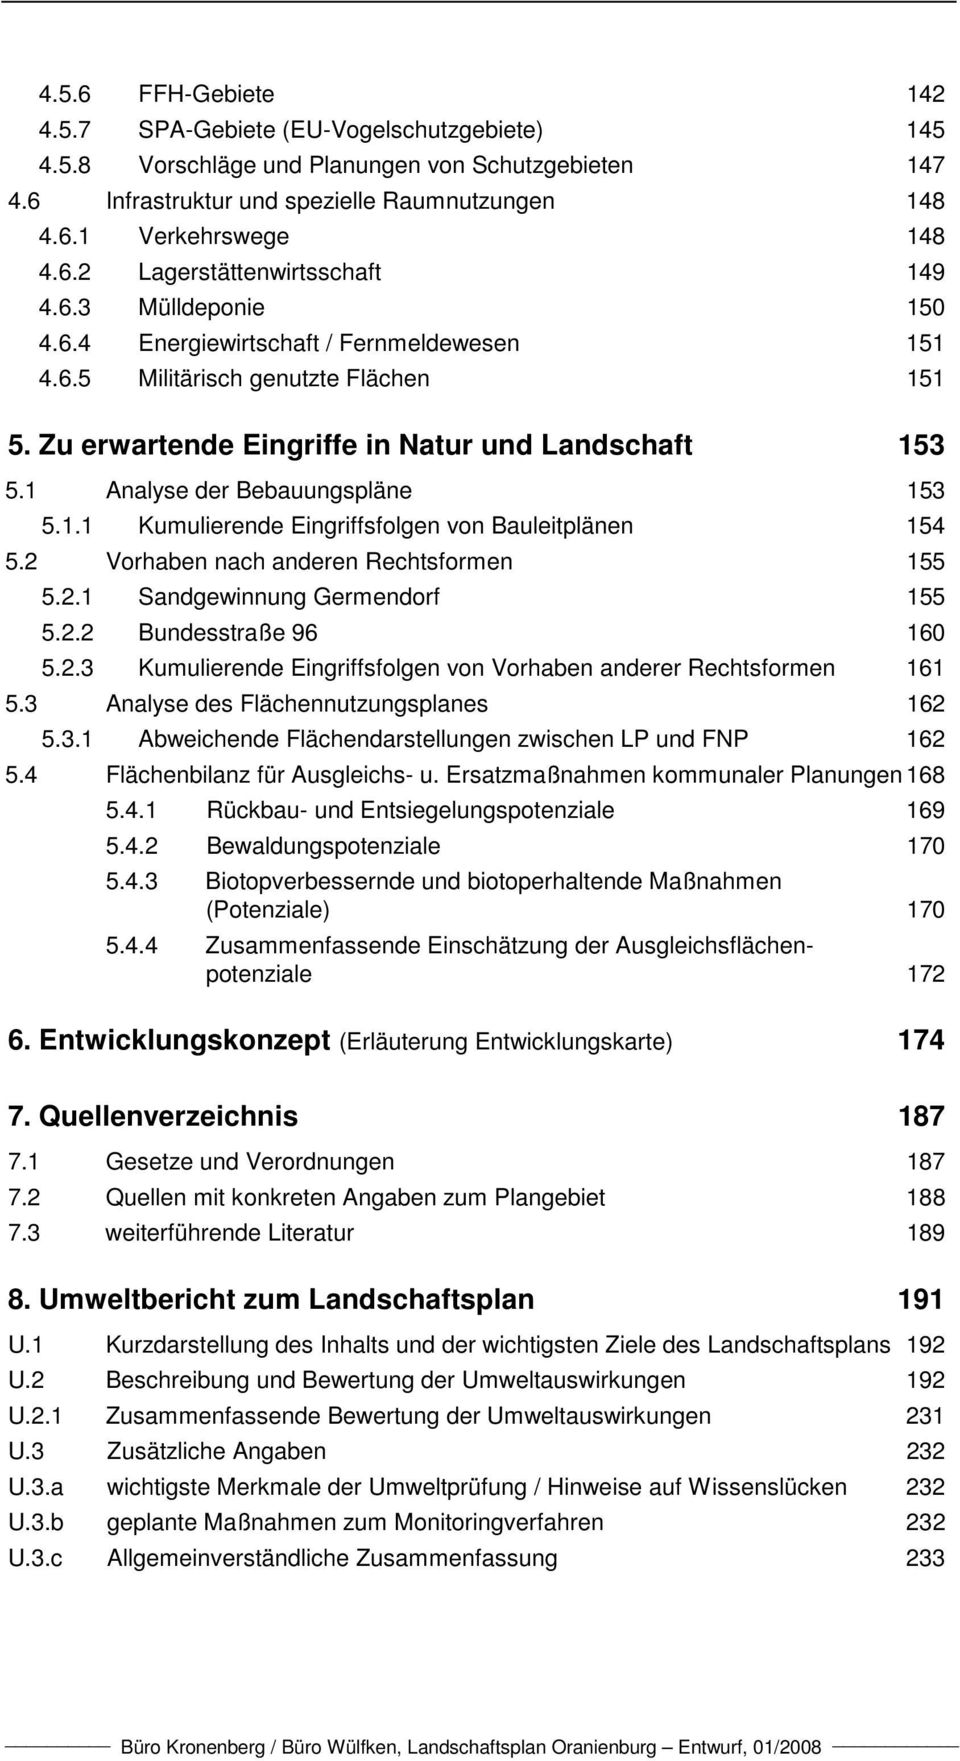 2 Vorhaben nach anderen Rechtsformen 155 5.2.1 Sandgewinnung Germendorf 155 5.2.2 Bundesstraße 96 160 5.2.3 Kumulierende Eingriffsfolgen von Vorhaben anderer Rechtsformen 161 5.